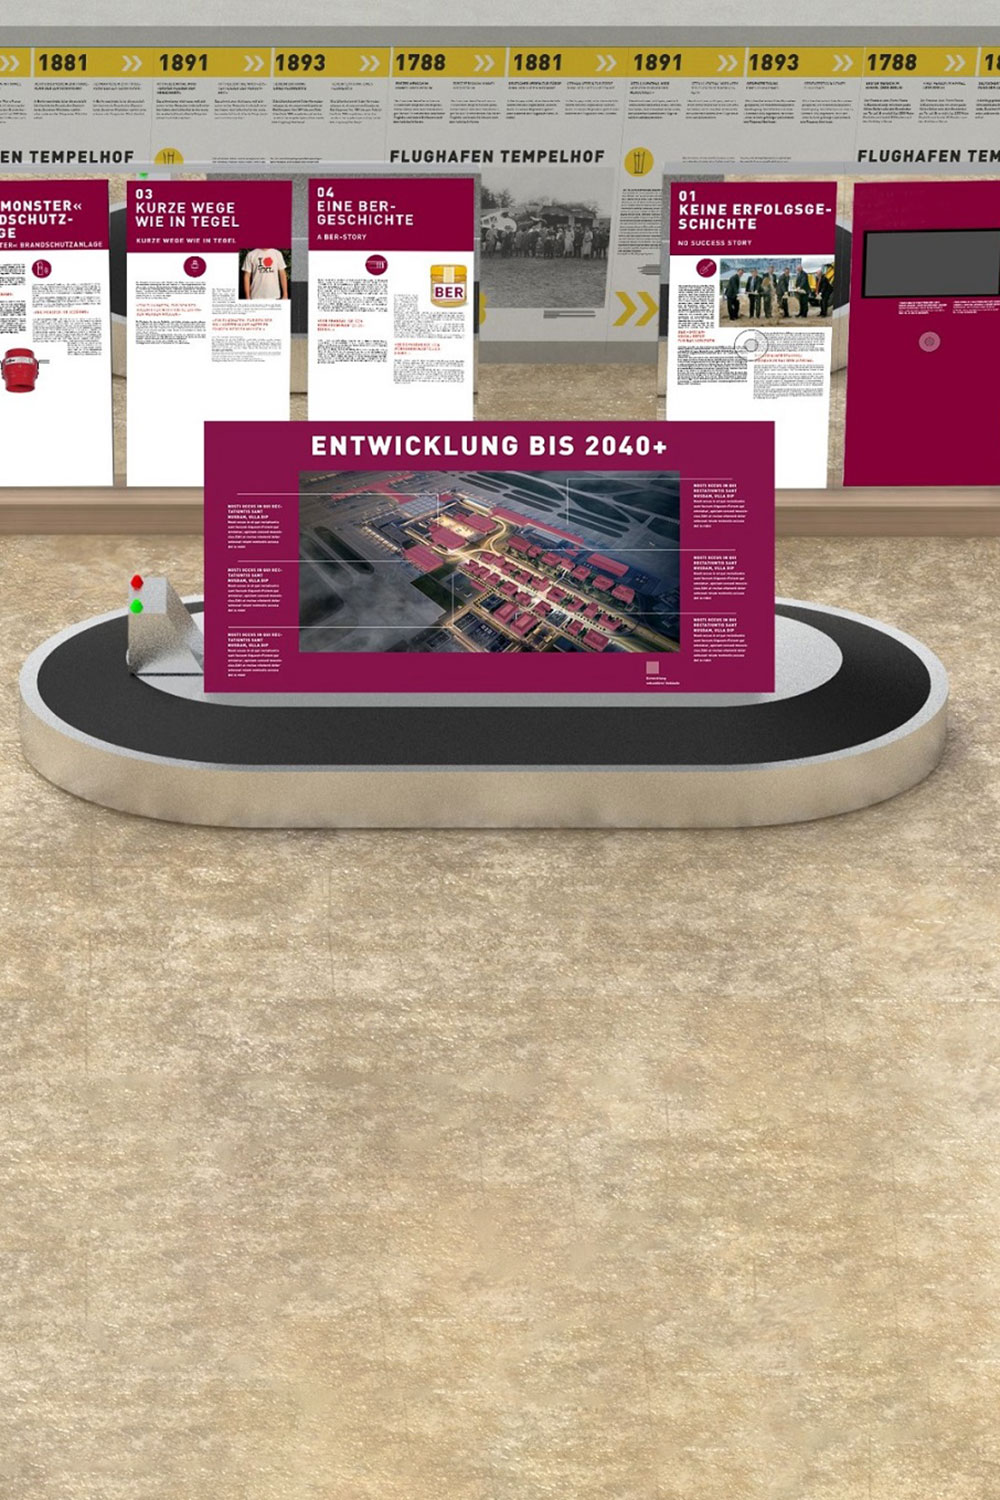 Visualisierung der Ausstellung im Terminal